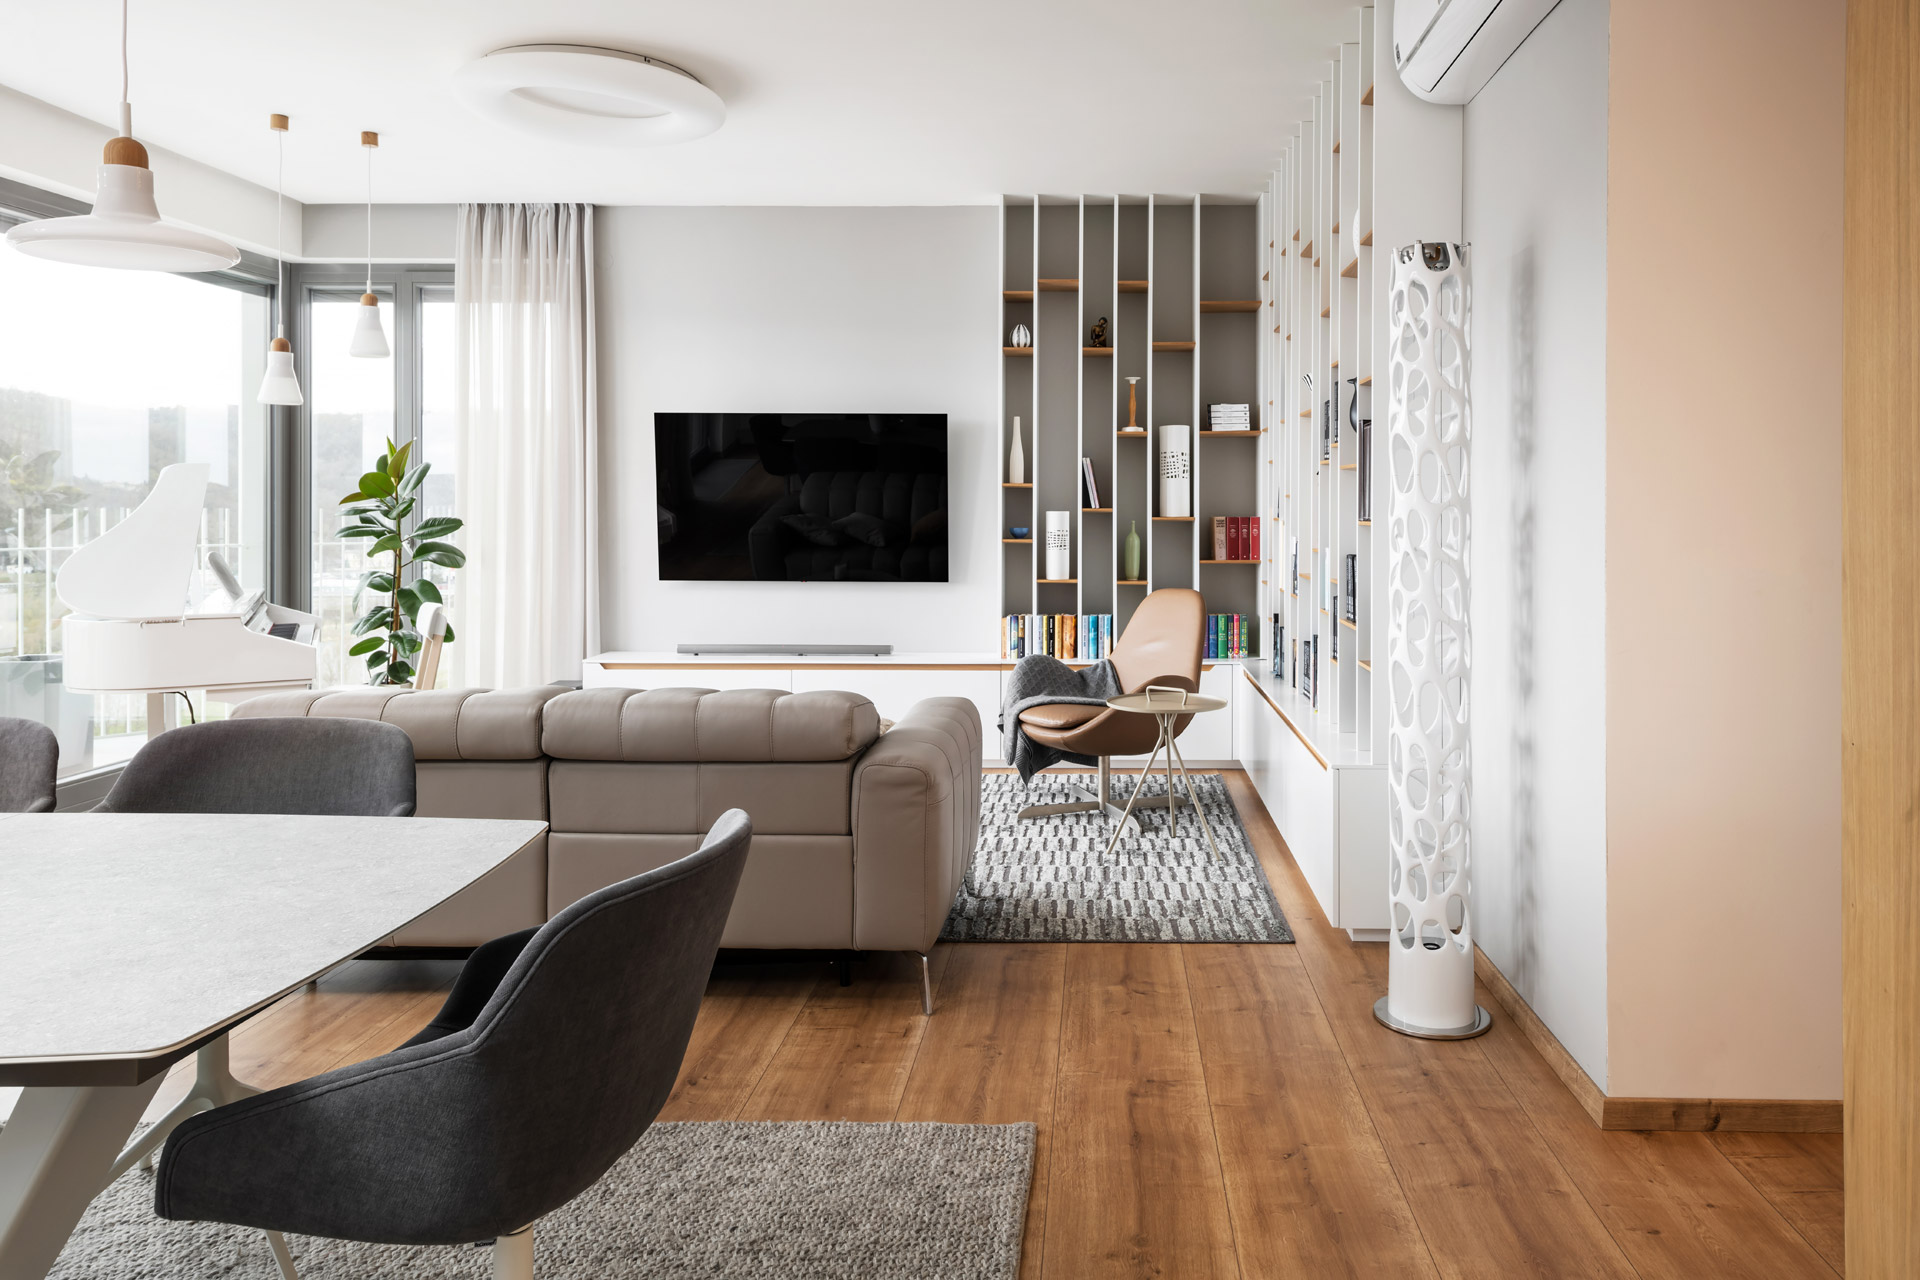 Hanák Furniture Realization of the living room